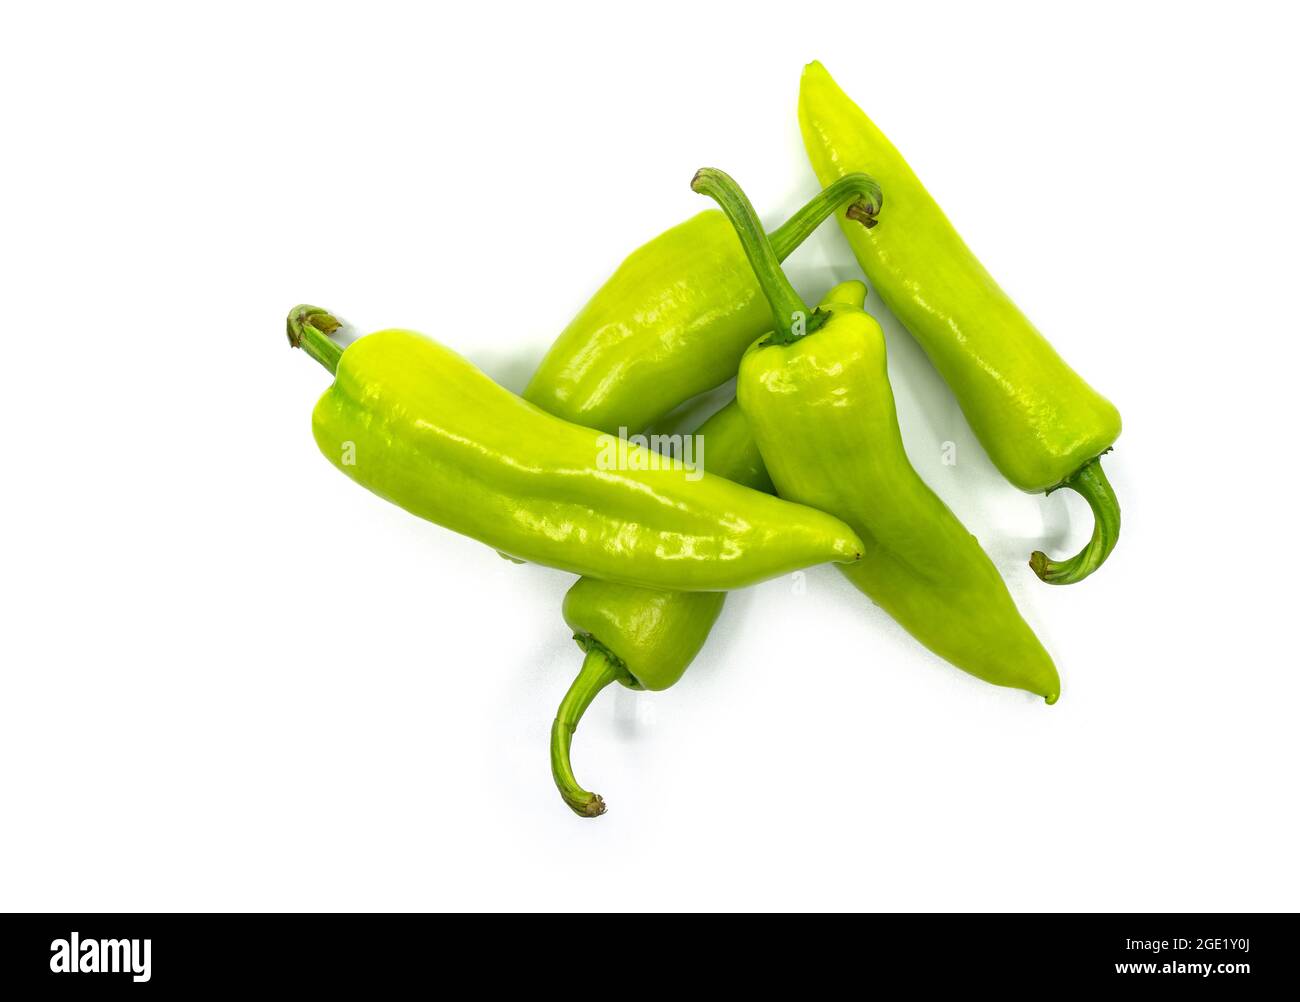 Flaches Lay von kleinen Haufen frische süße grüne Paprika oder Bananenschoten, das isolierte Bild auf weißem Hintergrund. Stockfoto